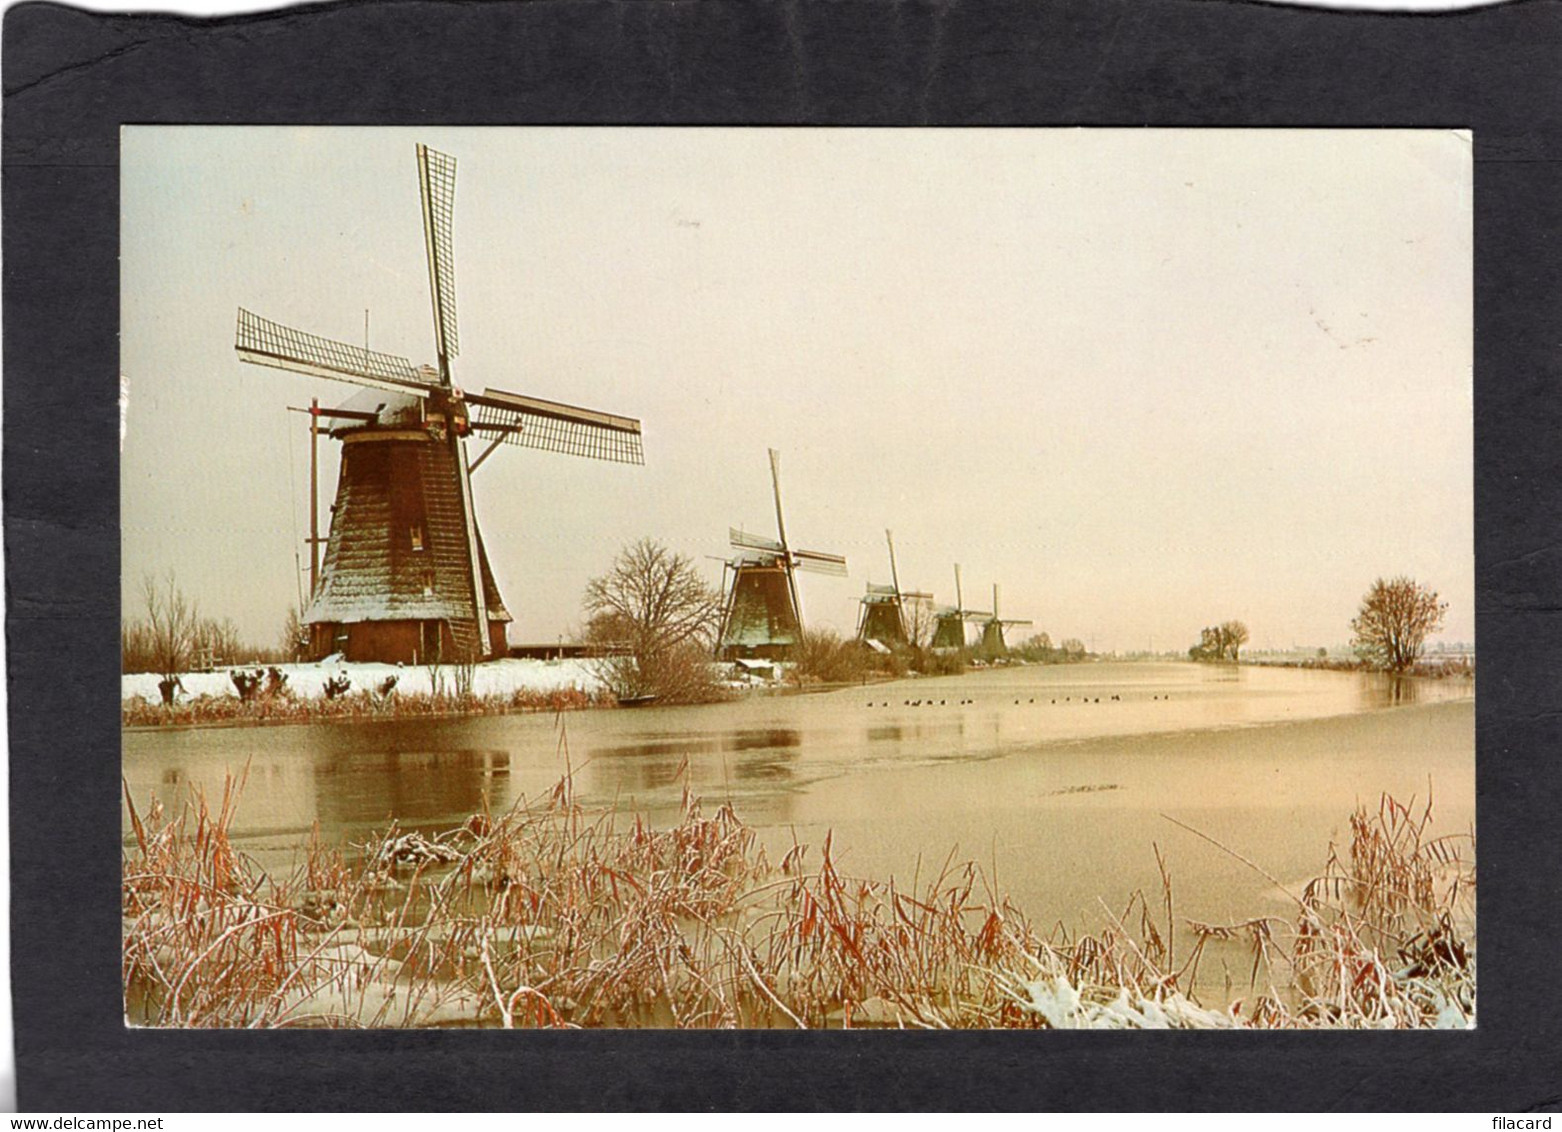 102656     Paesi  Bassi,  Kinderdijk,  Drainage-mills Of  The  Kinderdijk-complex, Polder "The Overwaard",  NV - Kinderdijk